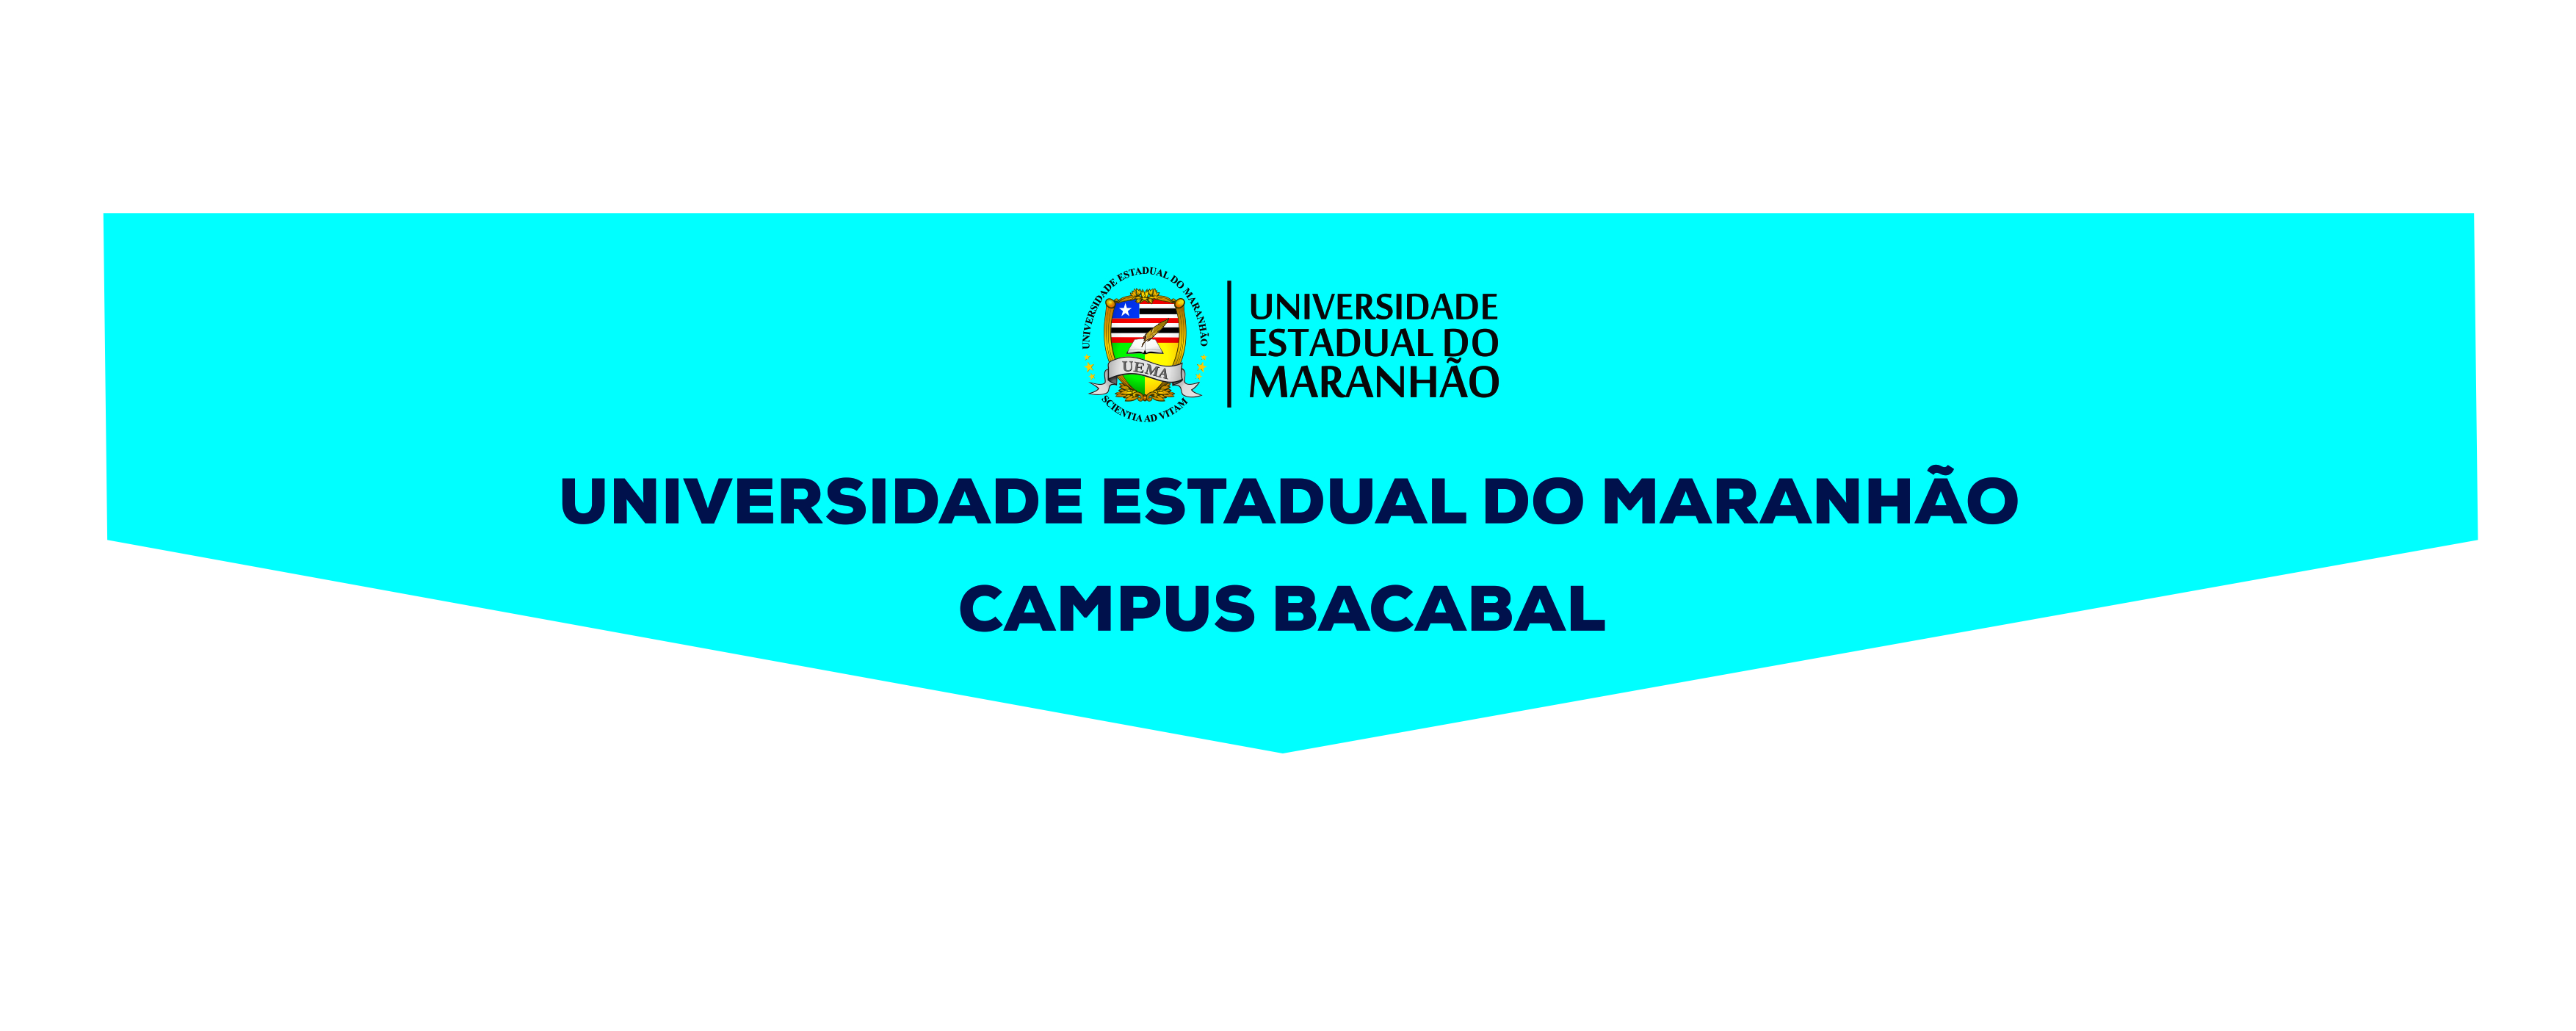 Inauguração do Campus Bacabal